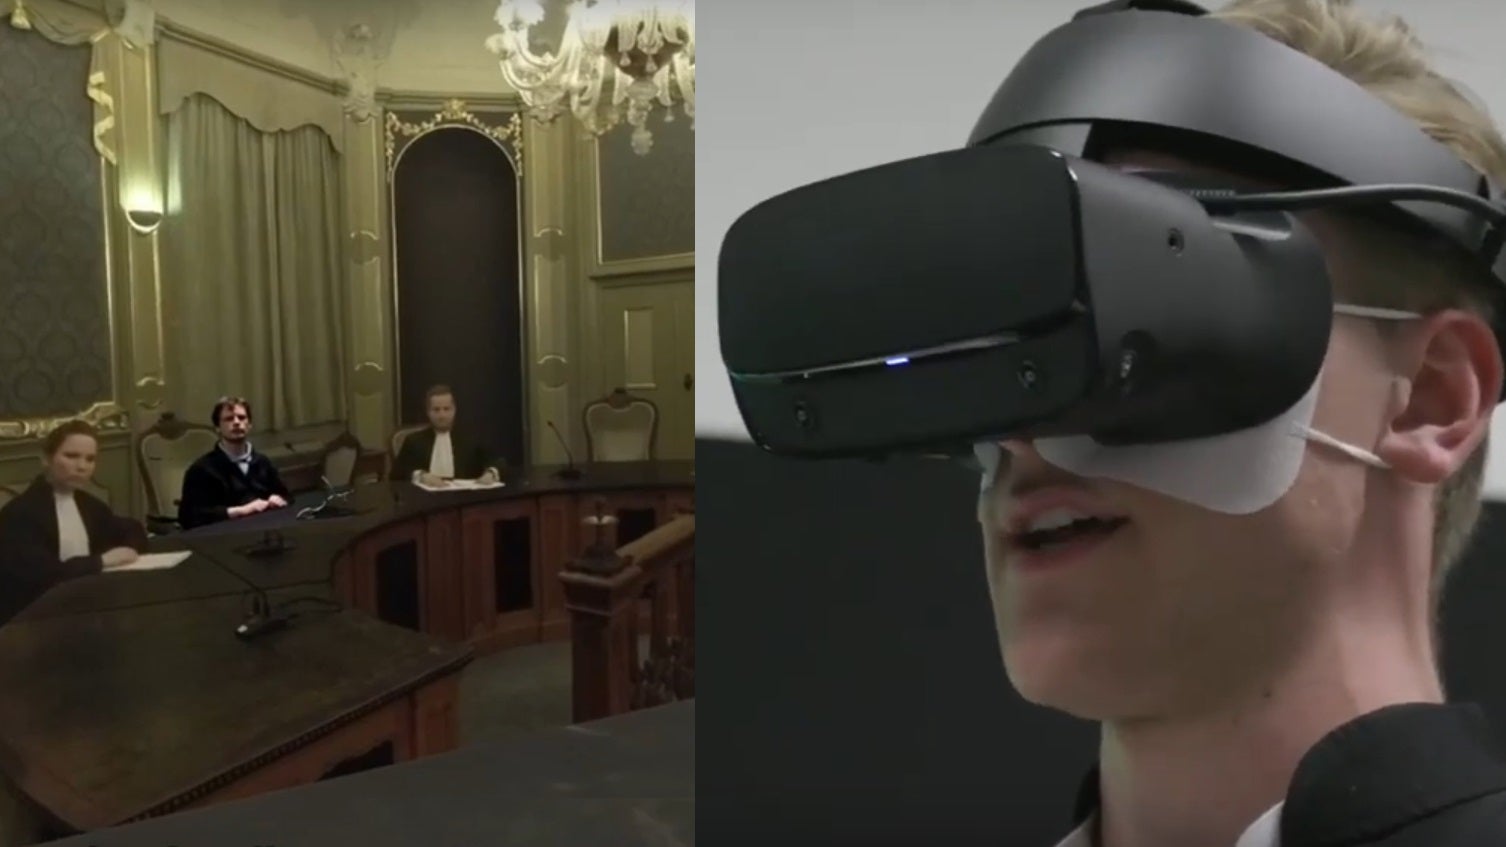 Een rechtenstudent met een VR-bril op ziet een rechtbank met drie medewerkers, twee in toga